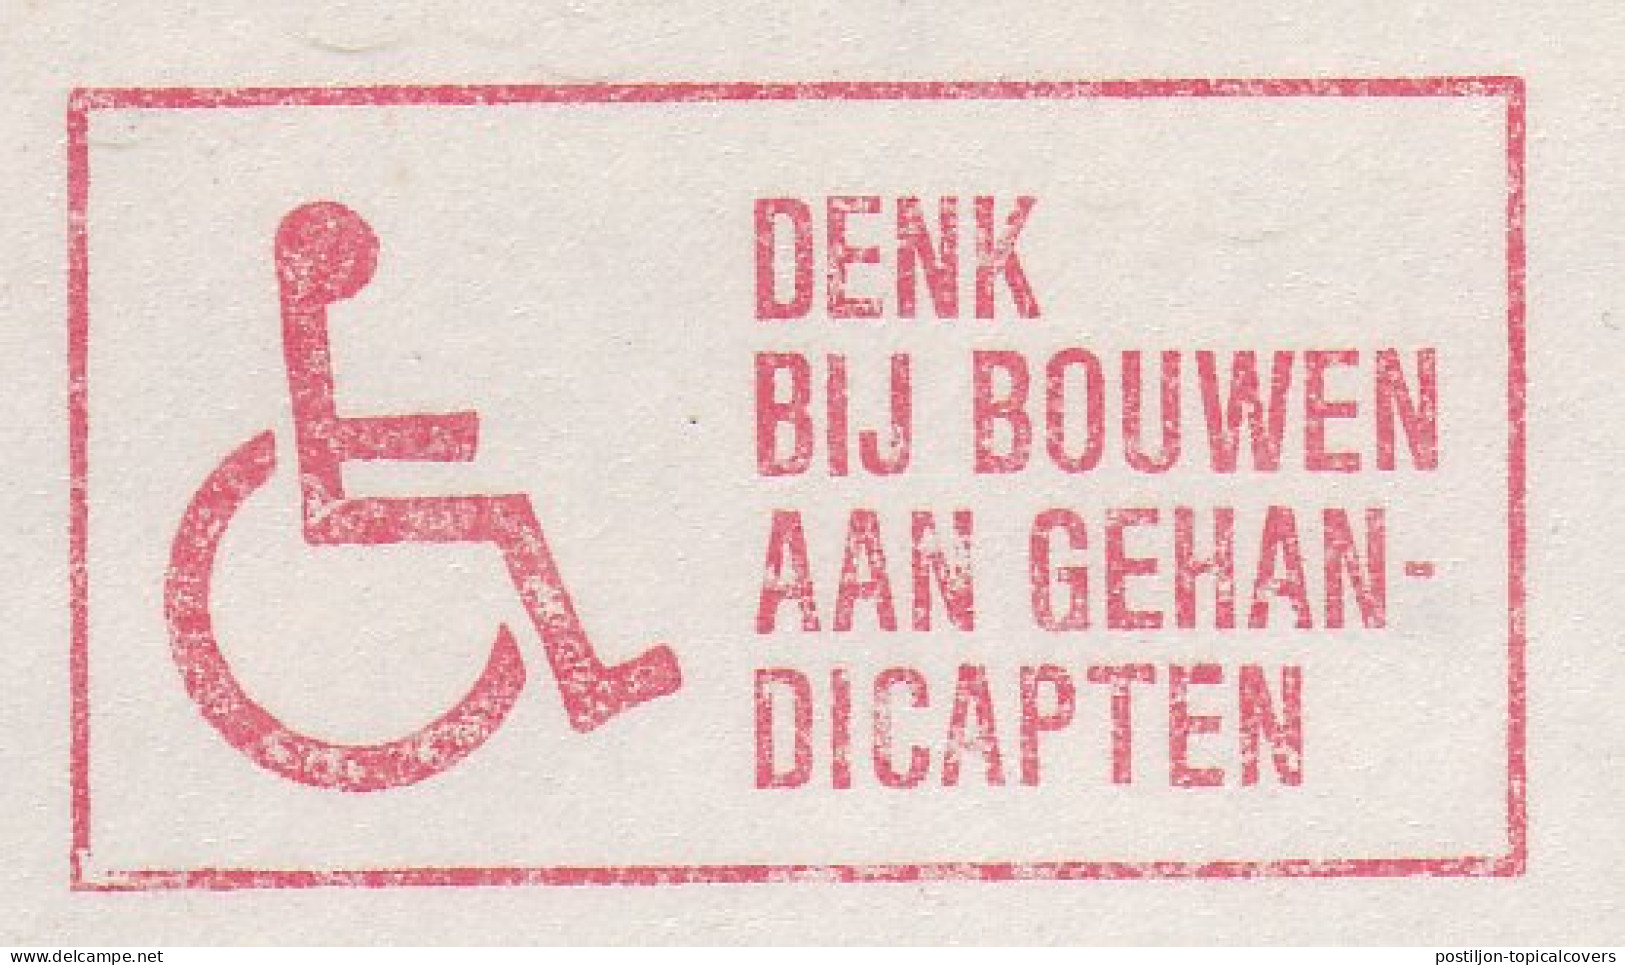 Meter Cut Netherlands 1983 Disabled - Wheelchair - Handicap